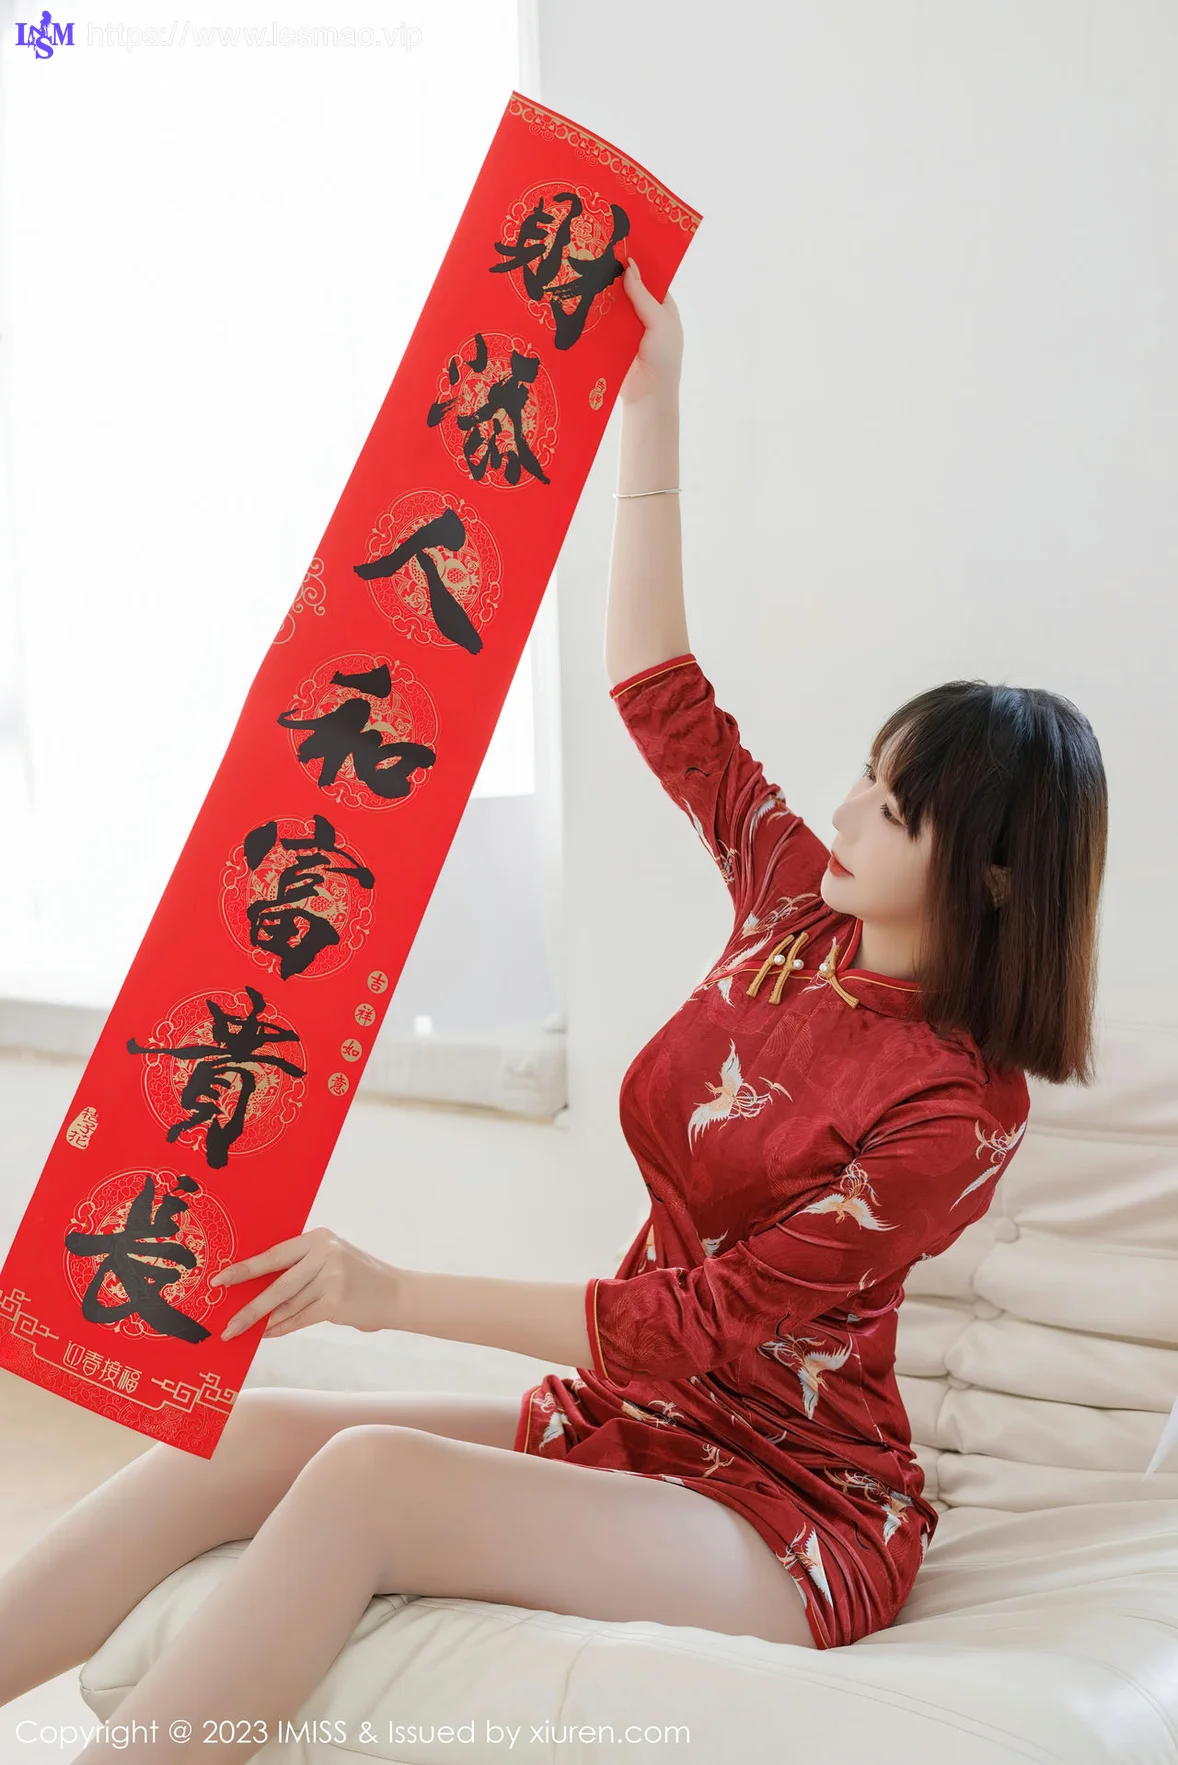 IMiss 爱蜜社 Vol.716 Evon陈赞之 红色旗袍最新性感写真 - 6